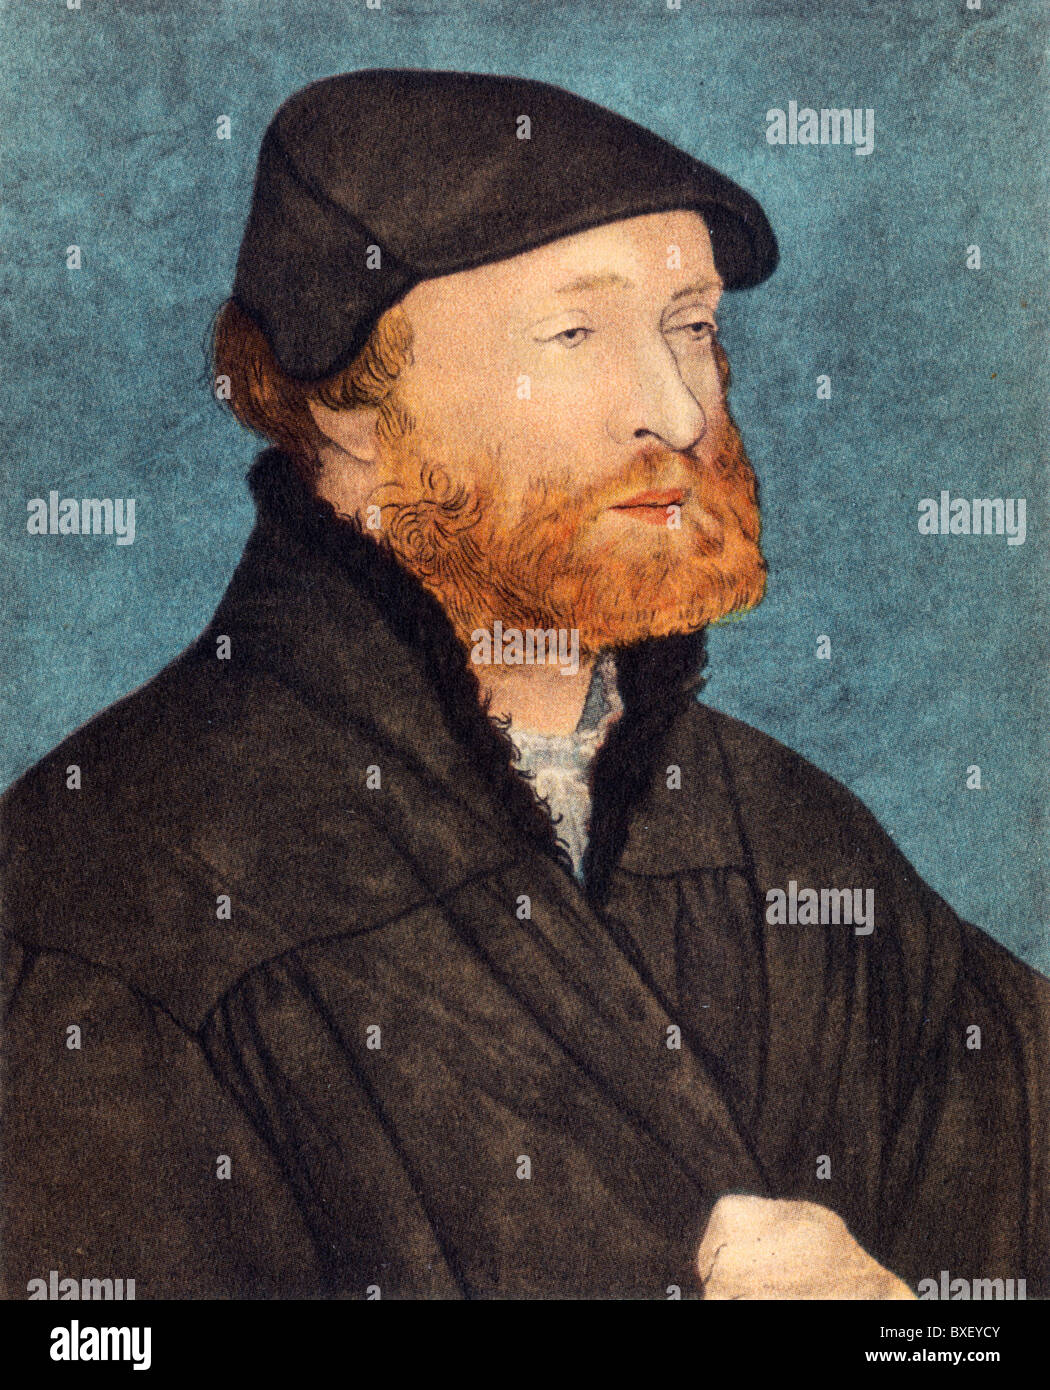 Selbstporträt von Hans Holbein dem jüngeren, wenn er etwa 40 Jahre alt war; Farbe Abbildung; Stockfoto